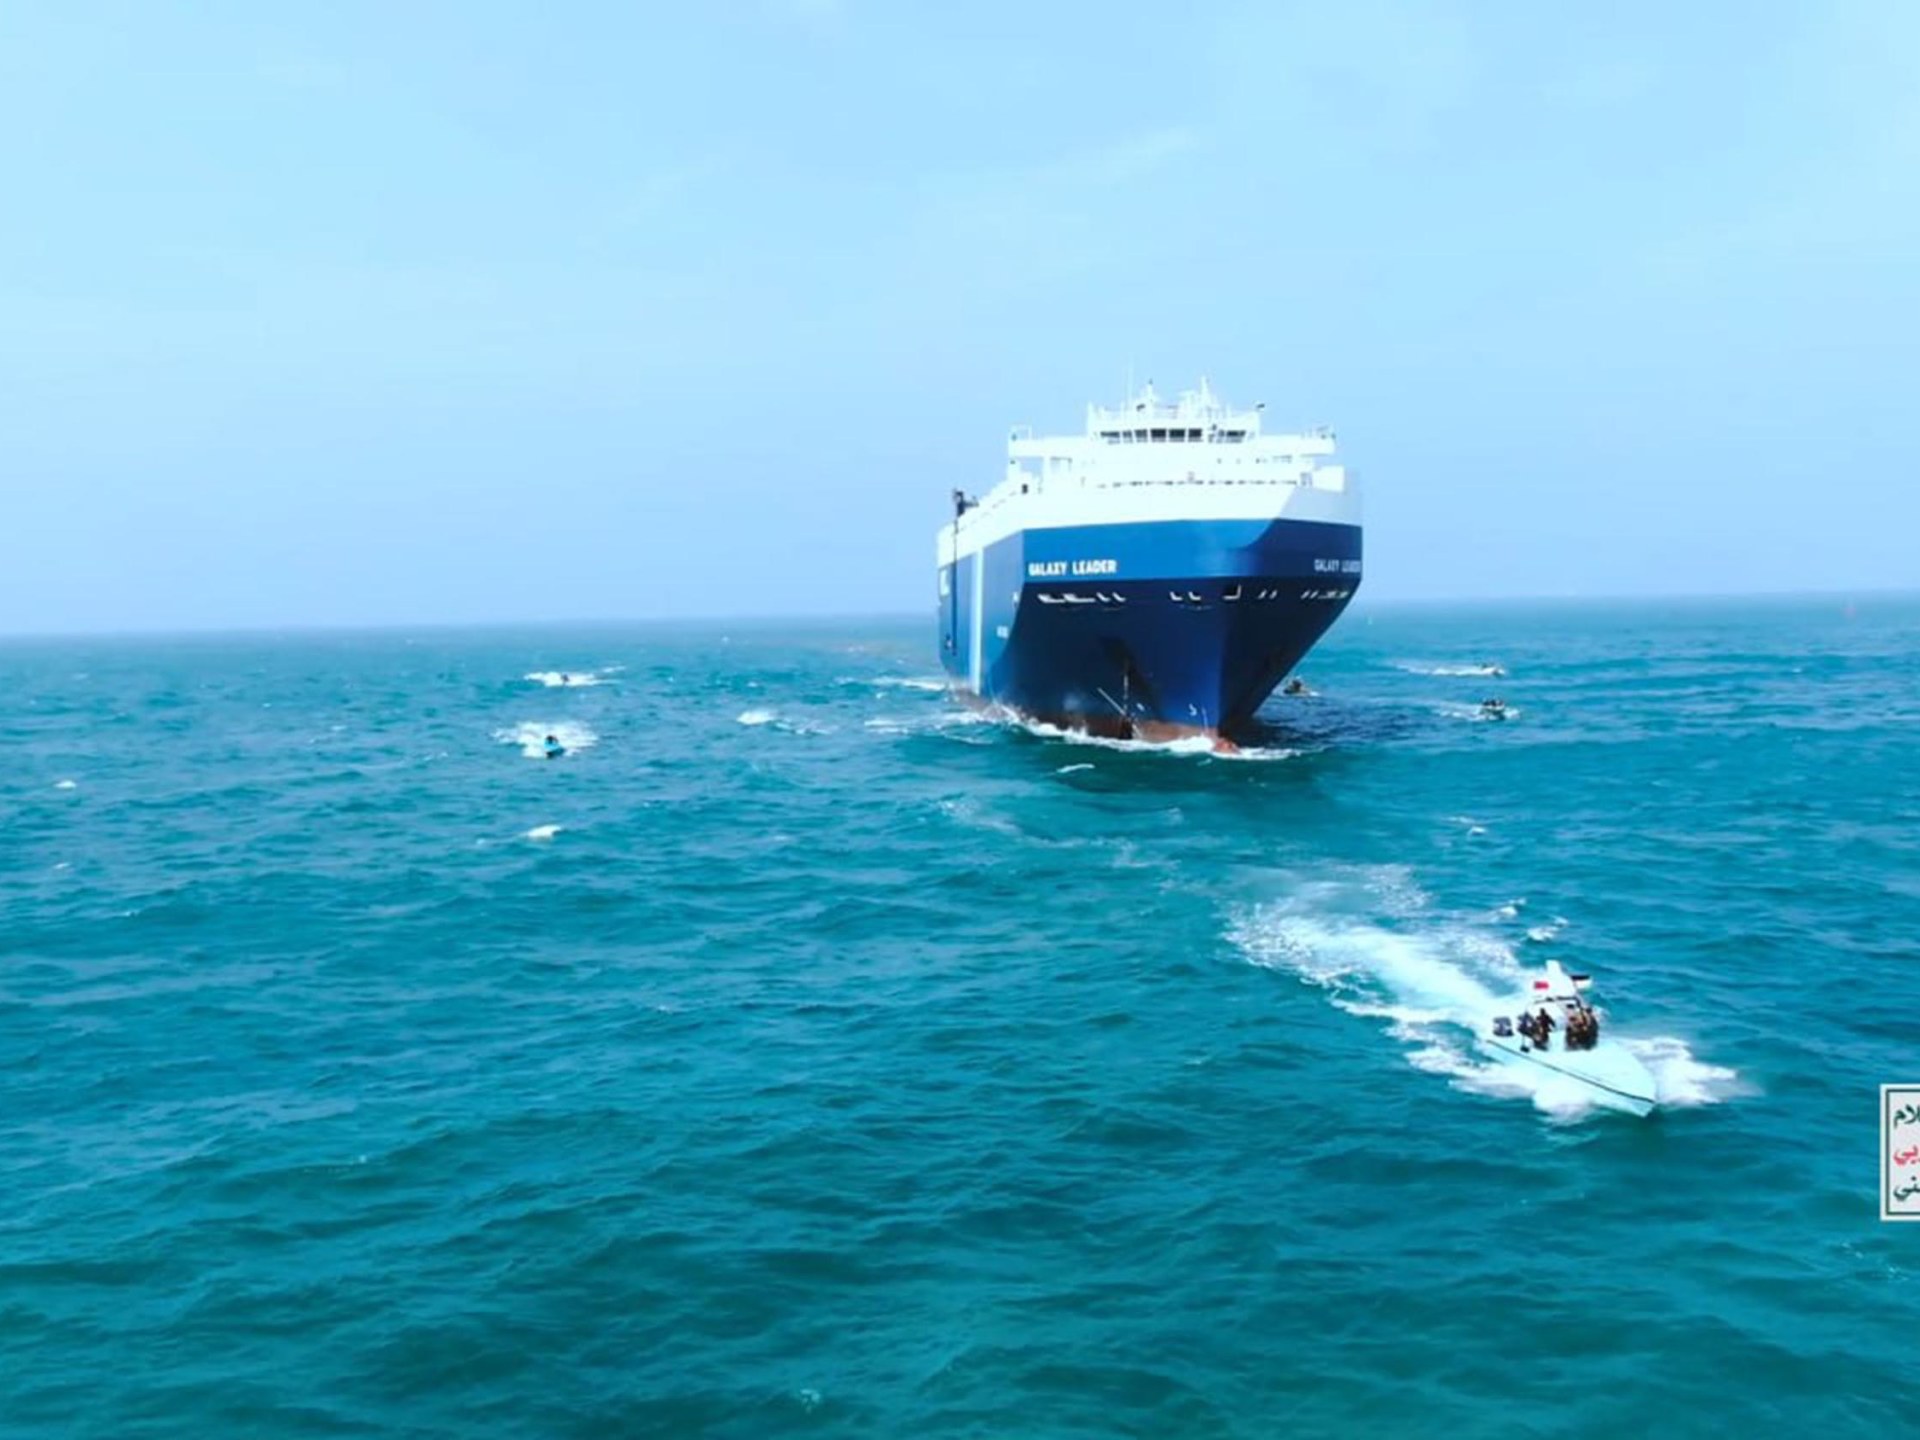 شركة ألمانية تغير مسار 25 سفينة لتجنب البحر الأحمر | أخبار – البوكس نيوز